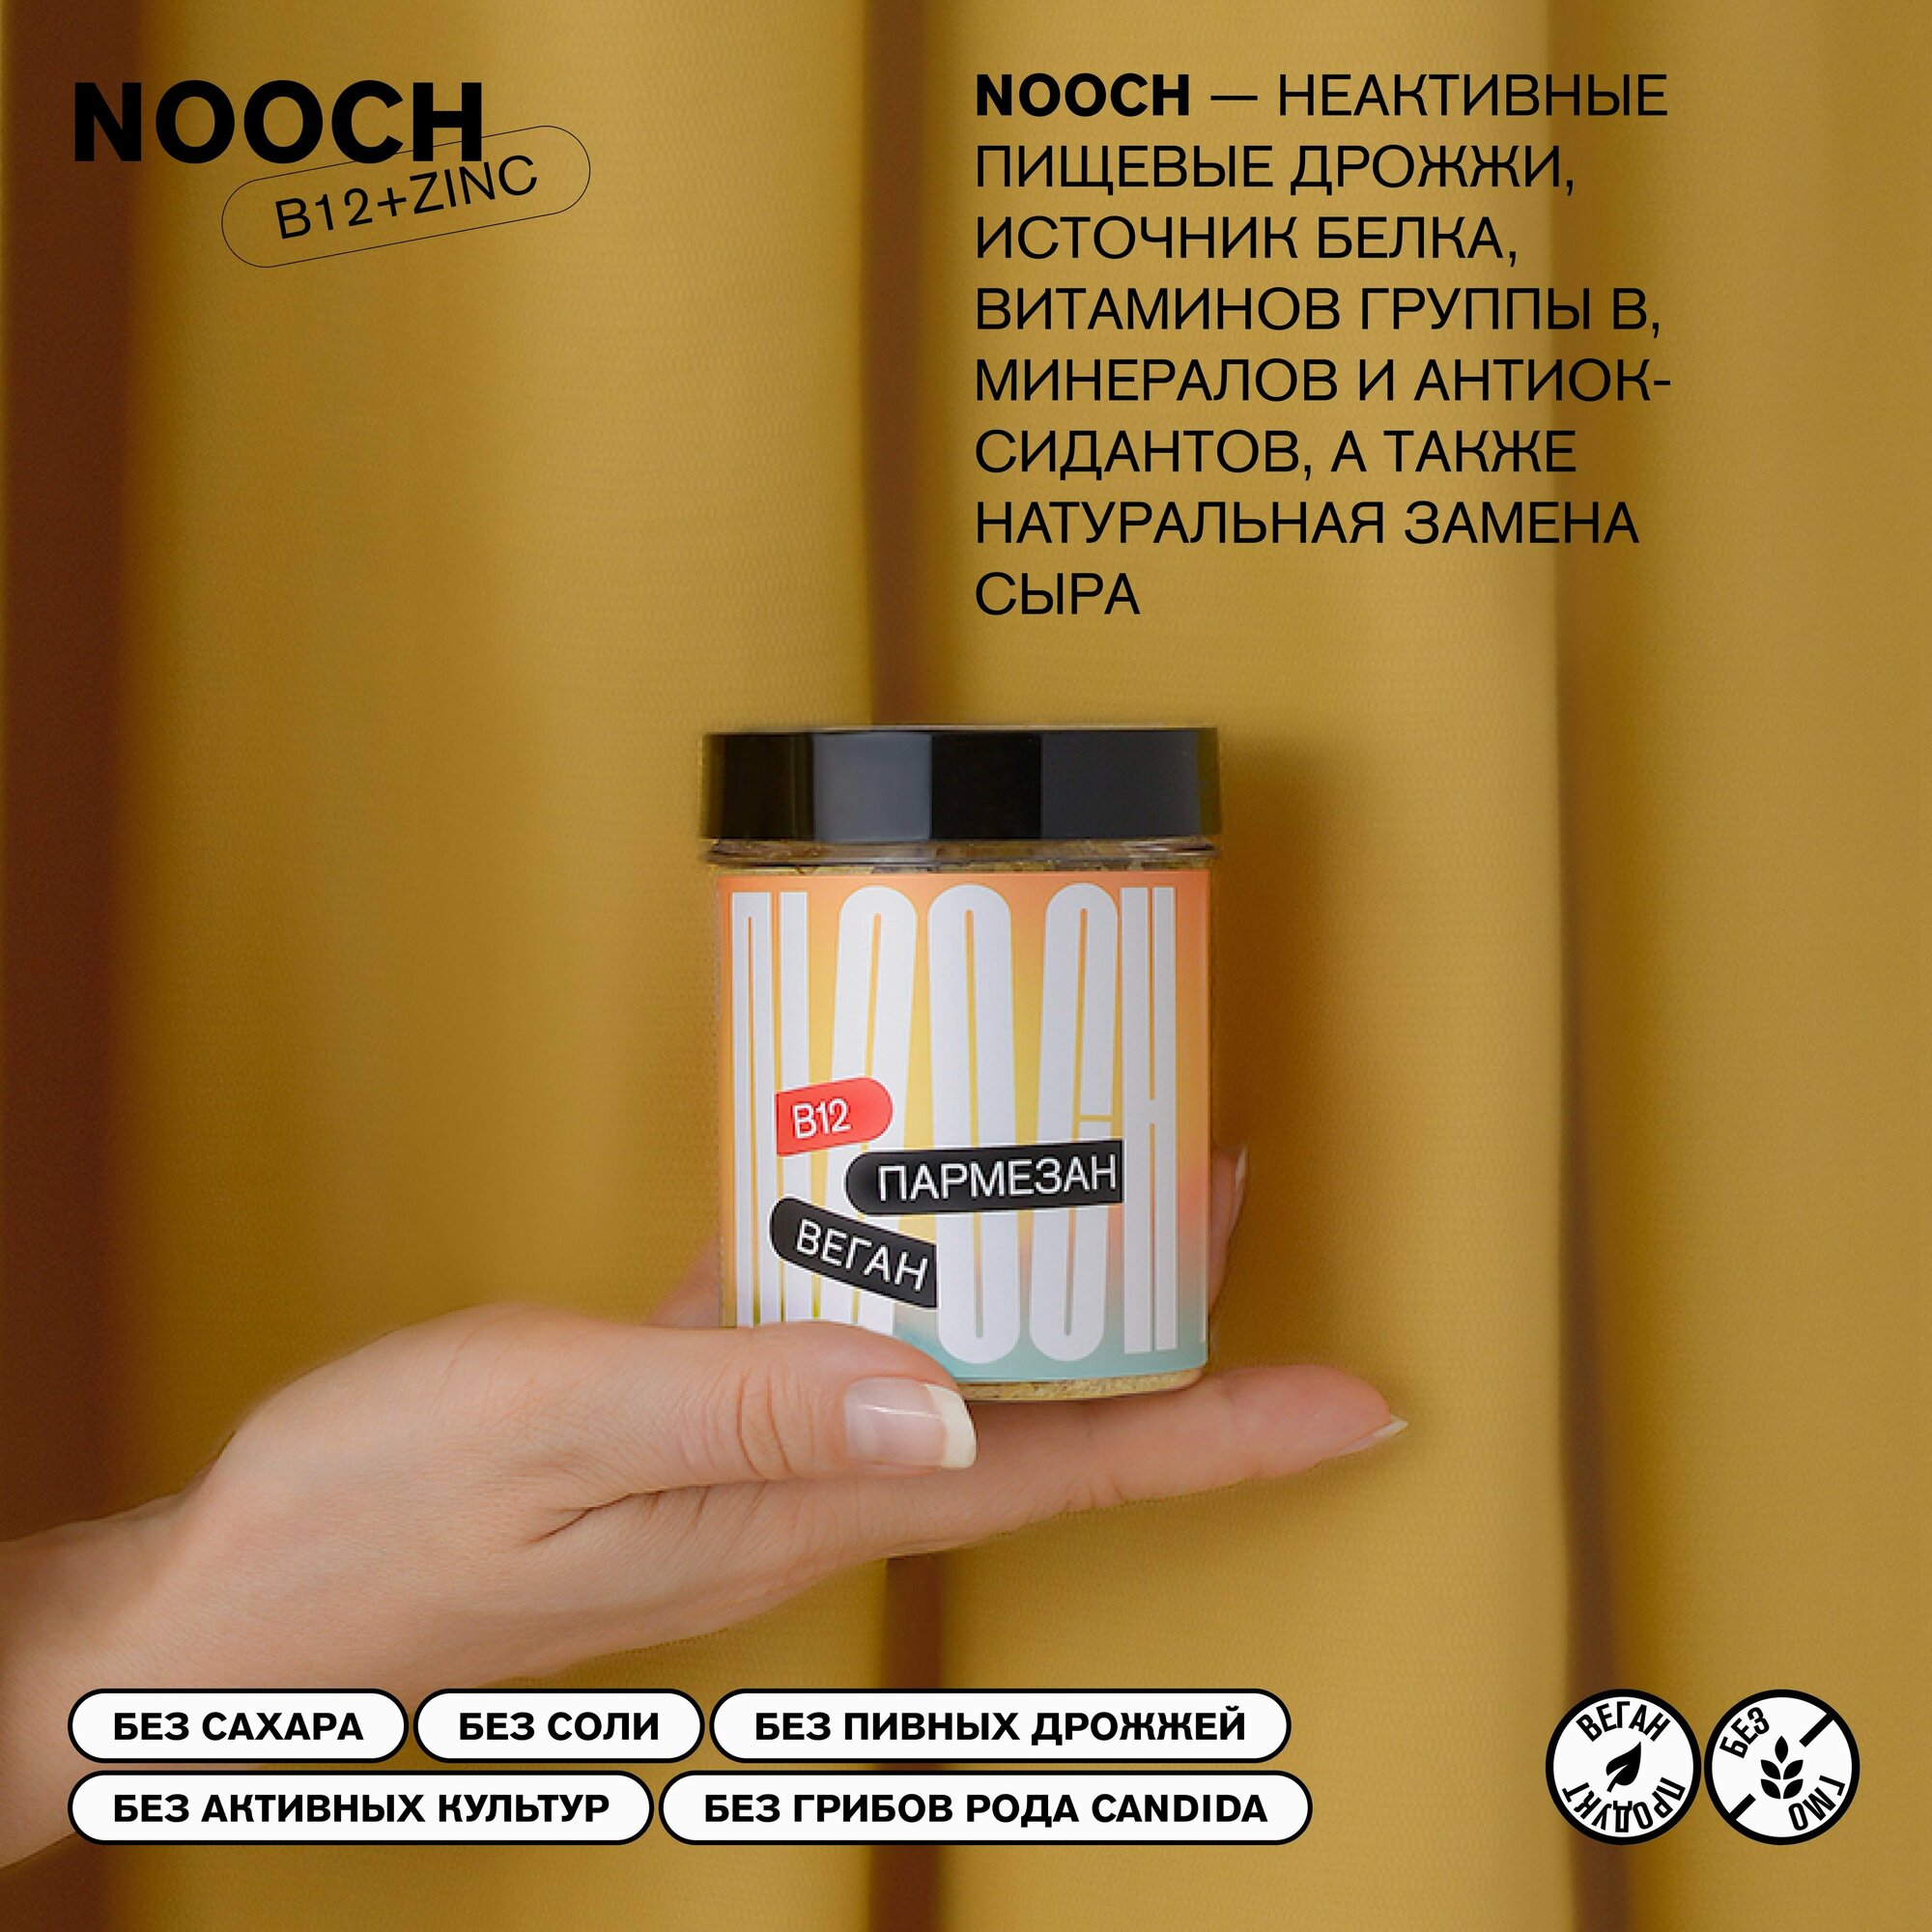 Пищевые неактивные дрожжи Nooch B12+Zinc, банка 35г